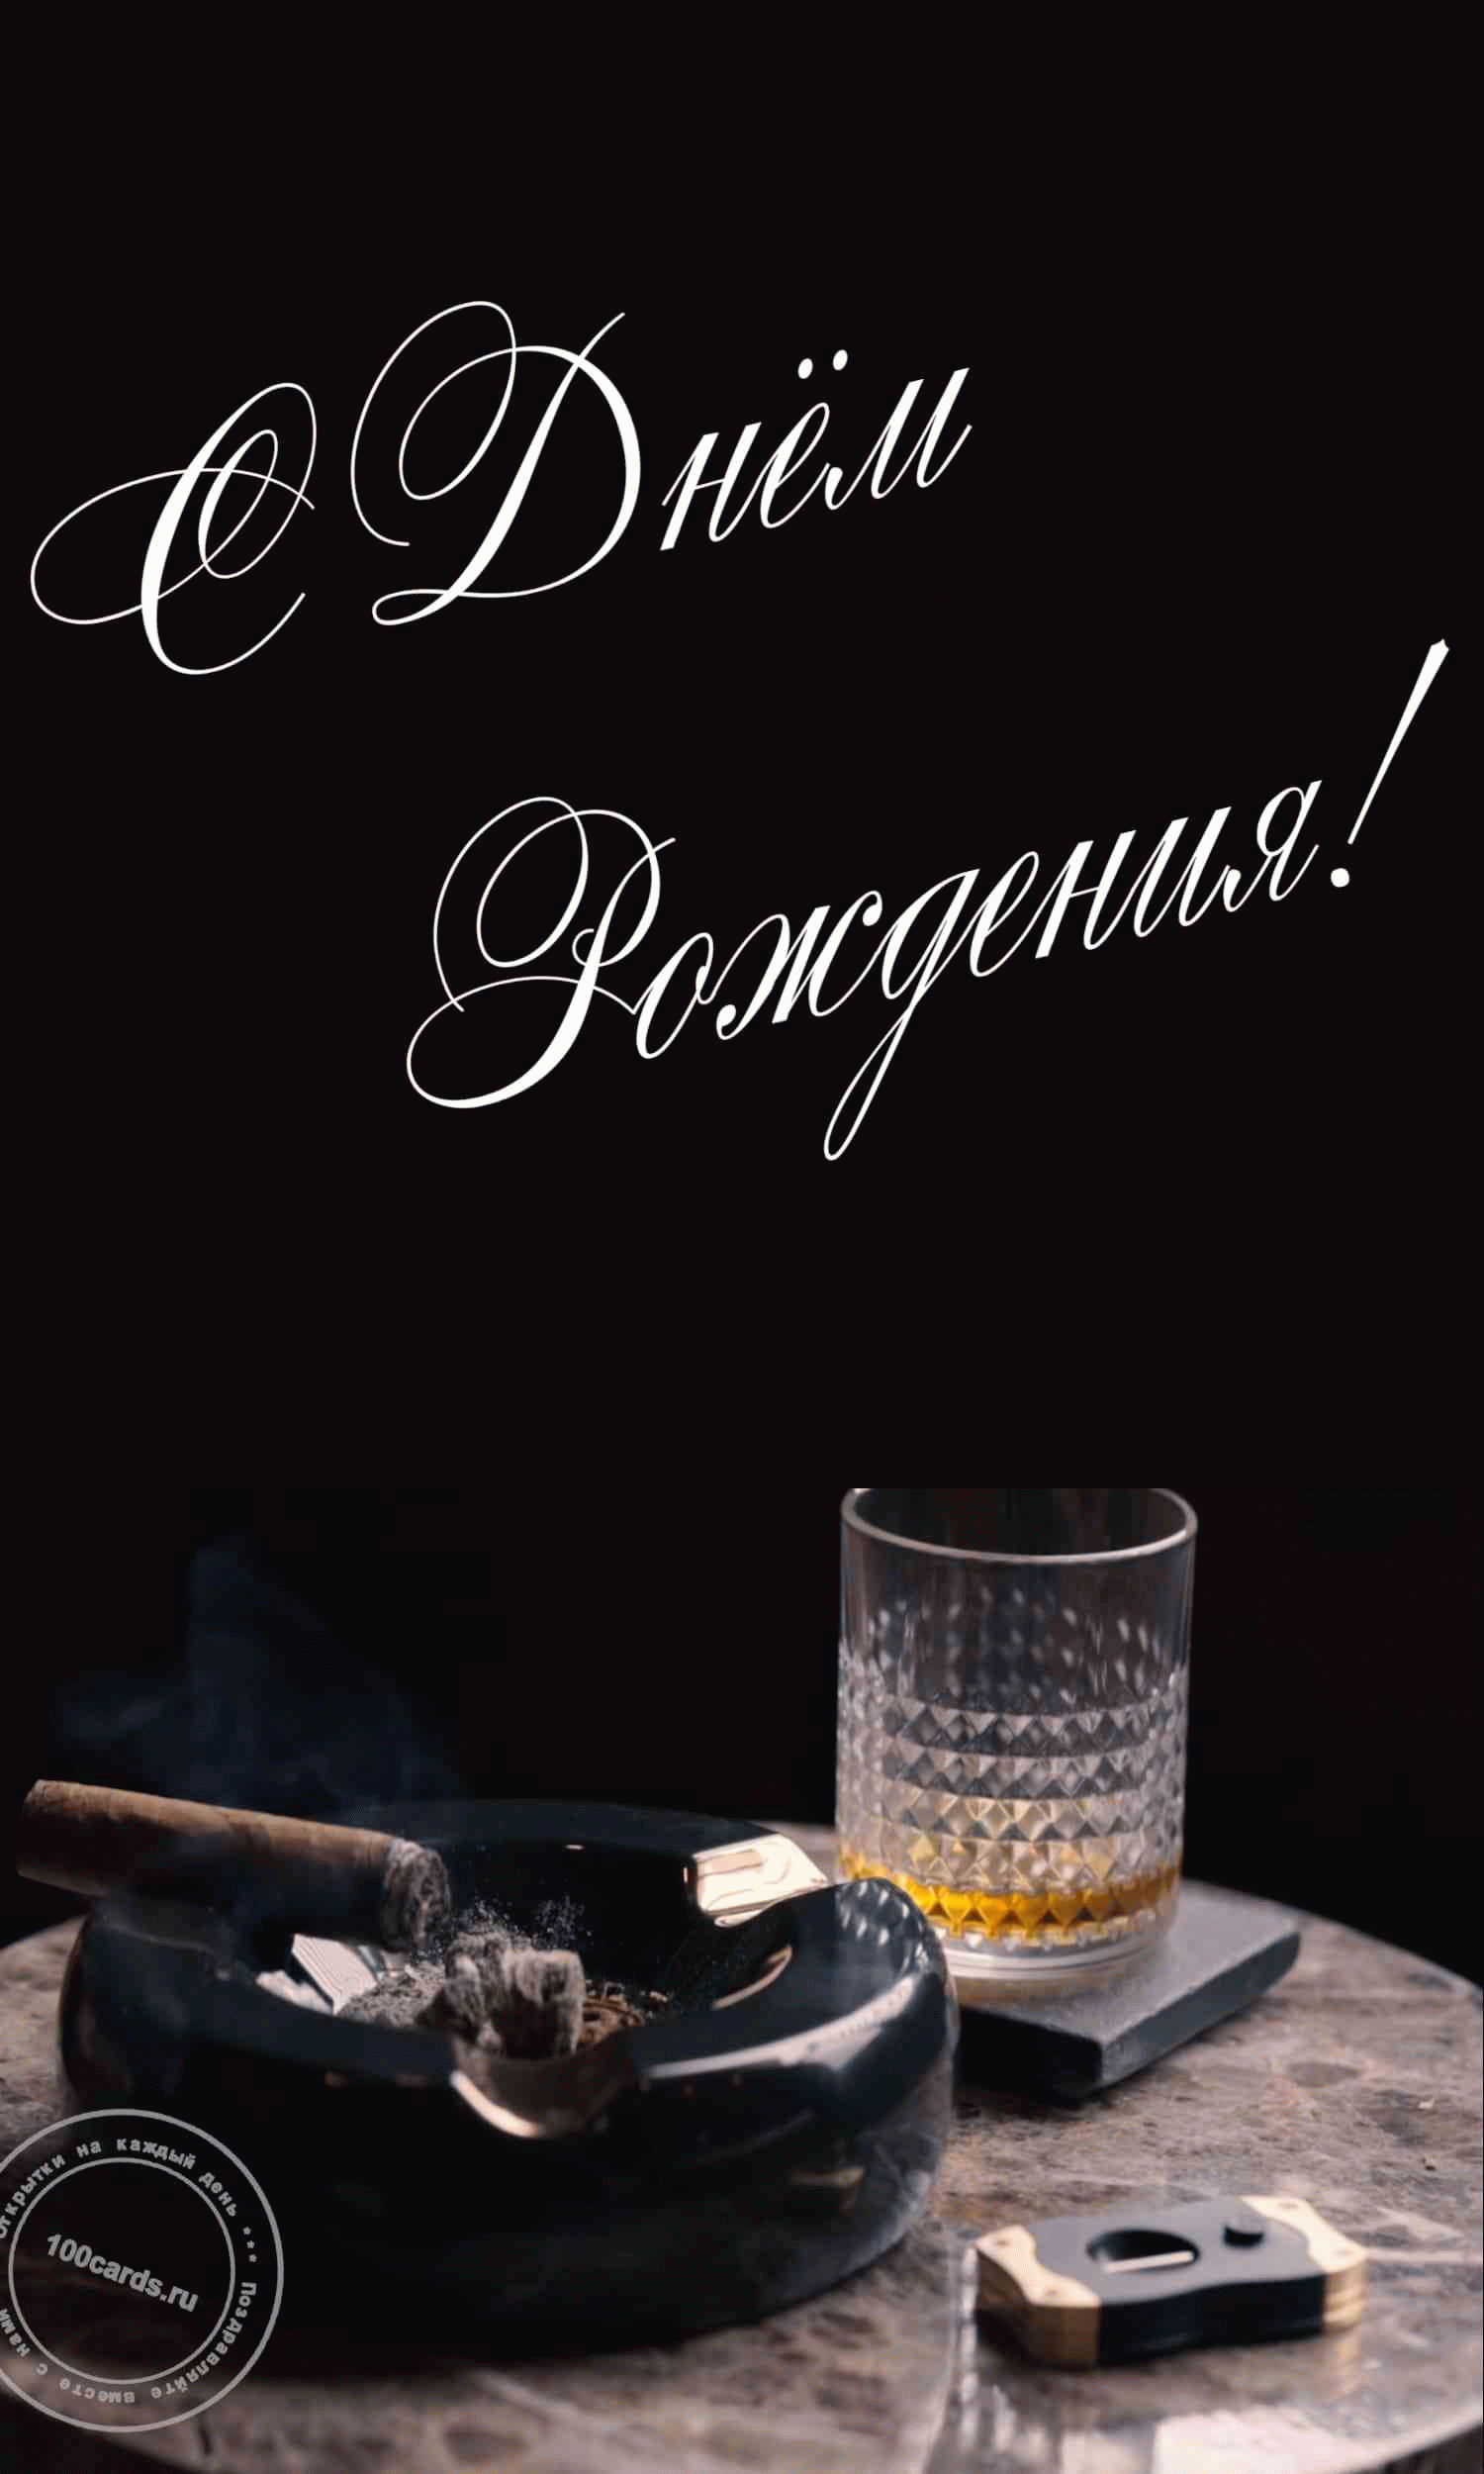 Бокал виски и сигара на поздравительной открытке в день рождения для мужчины